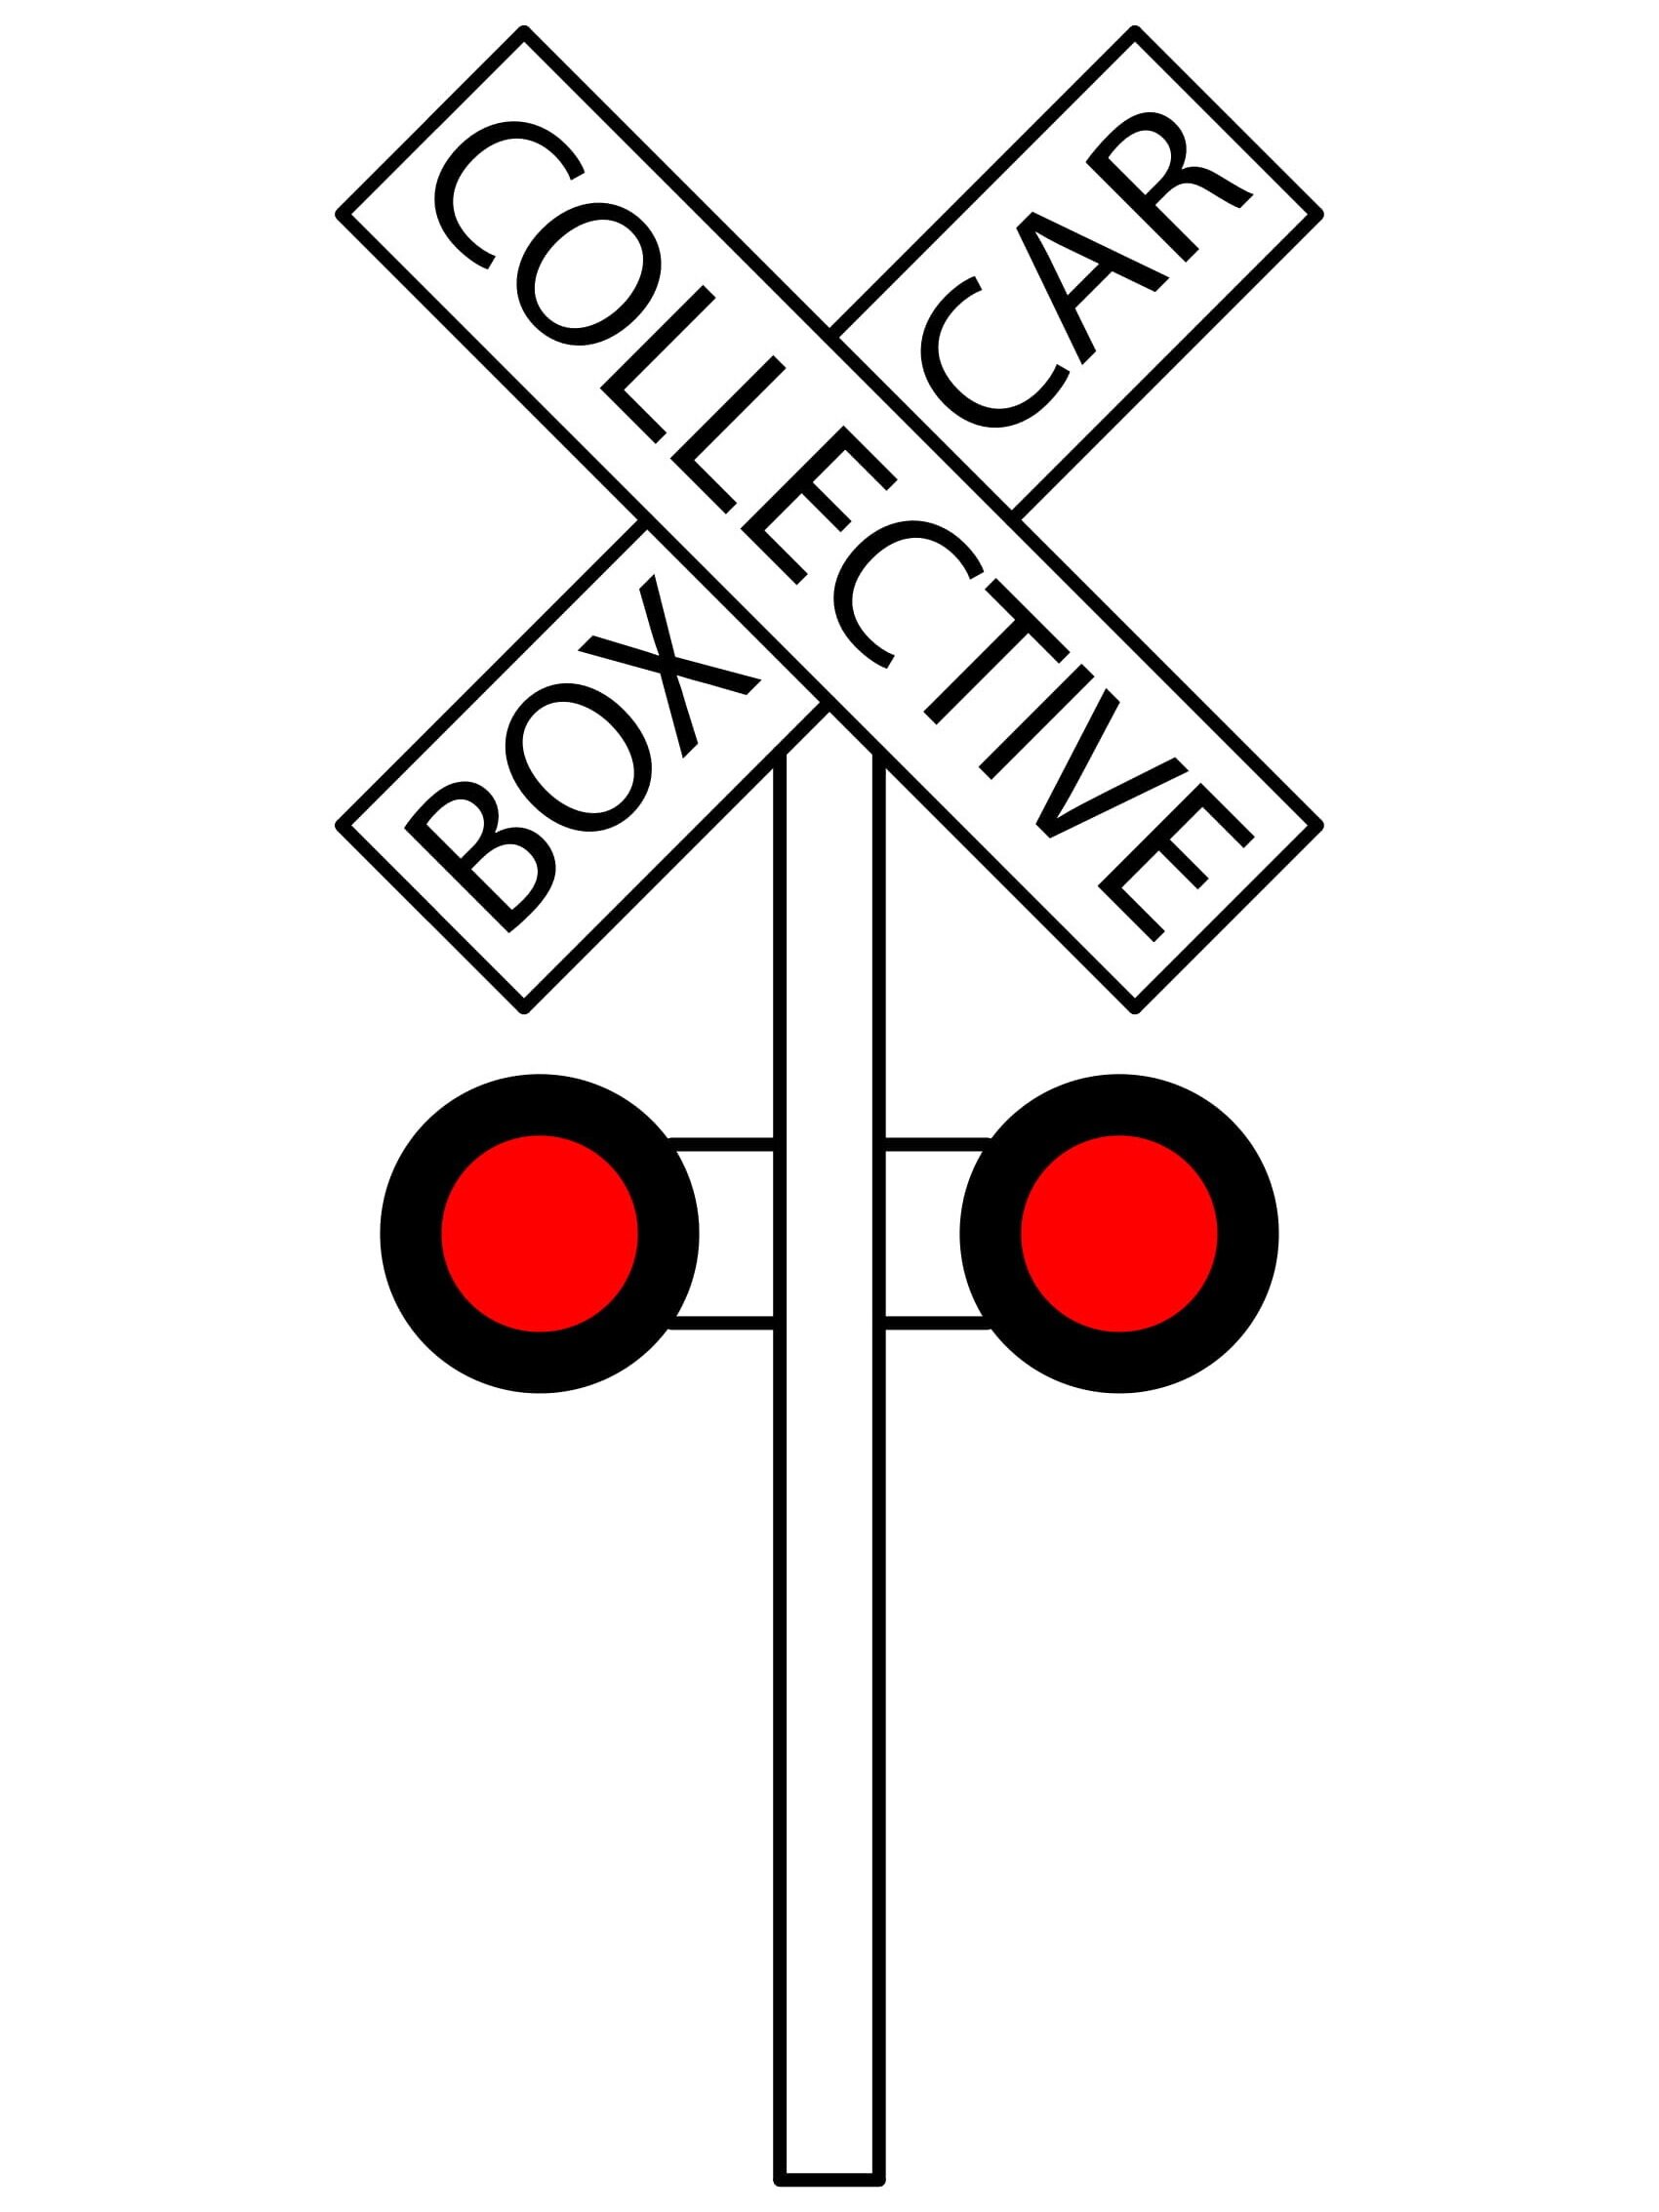 Boxcar Collective